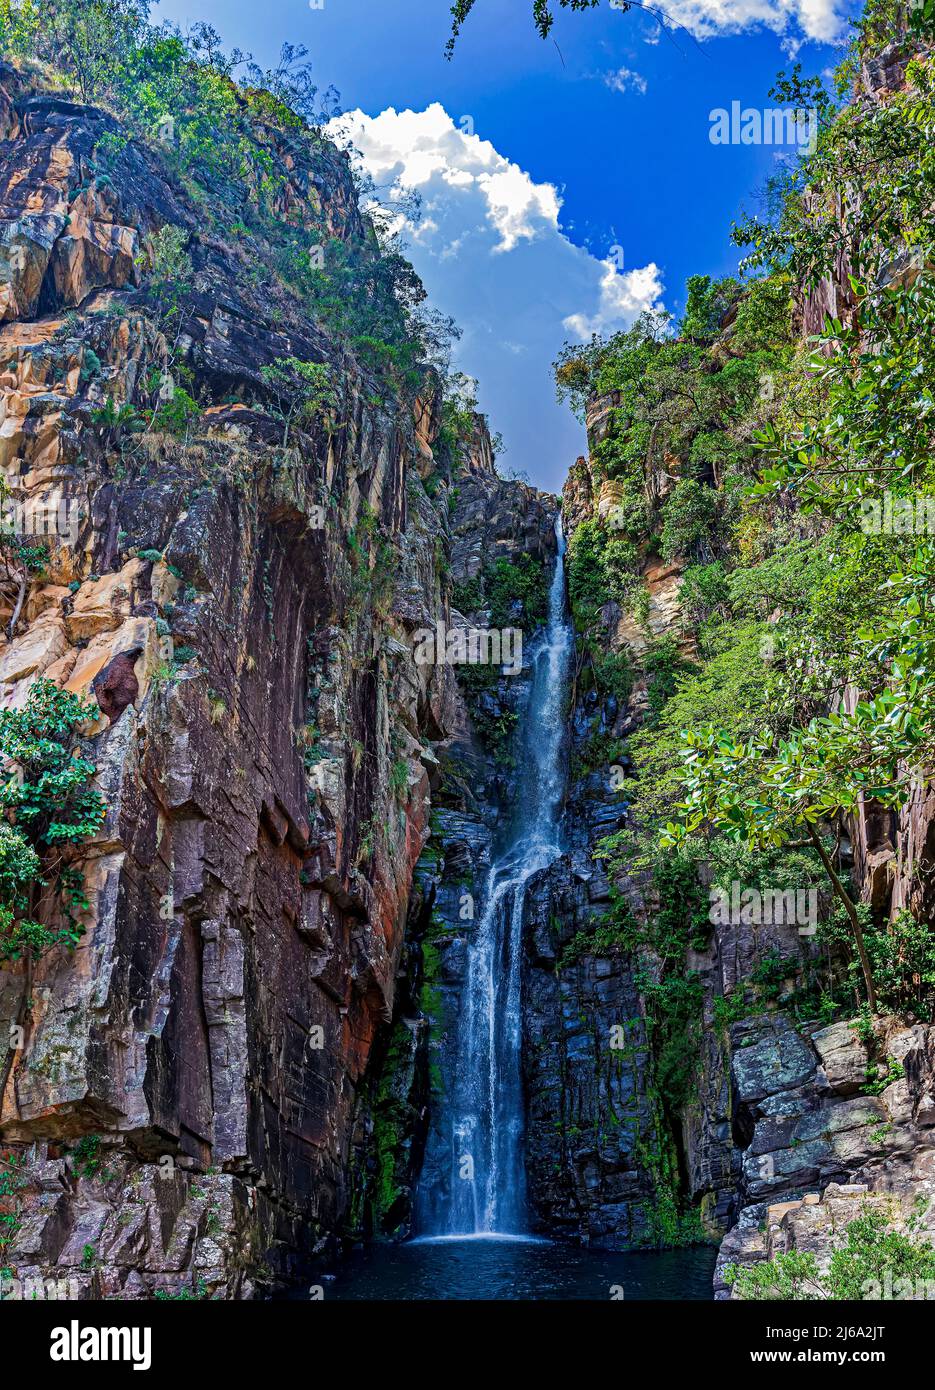 Cascada de Veu da Noiva (Velo de la Novia) entre las rocas y la vegetación típica del Cerrado en Serra do CIPO en el estado de Minas Gerais, B Foto de stock